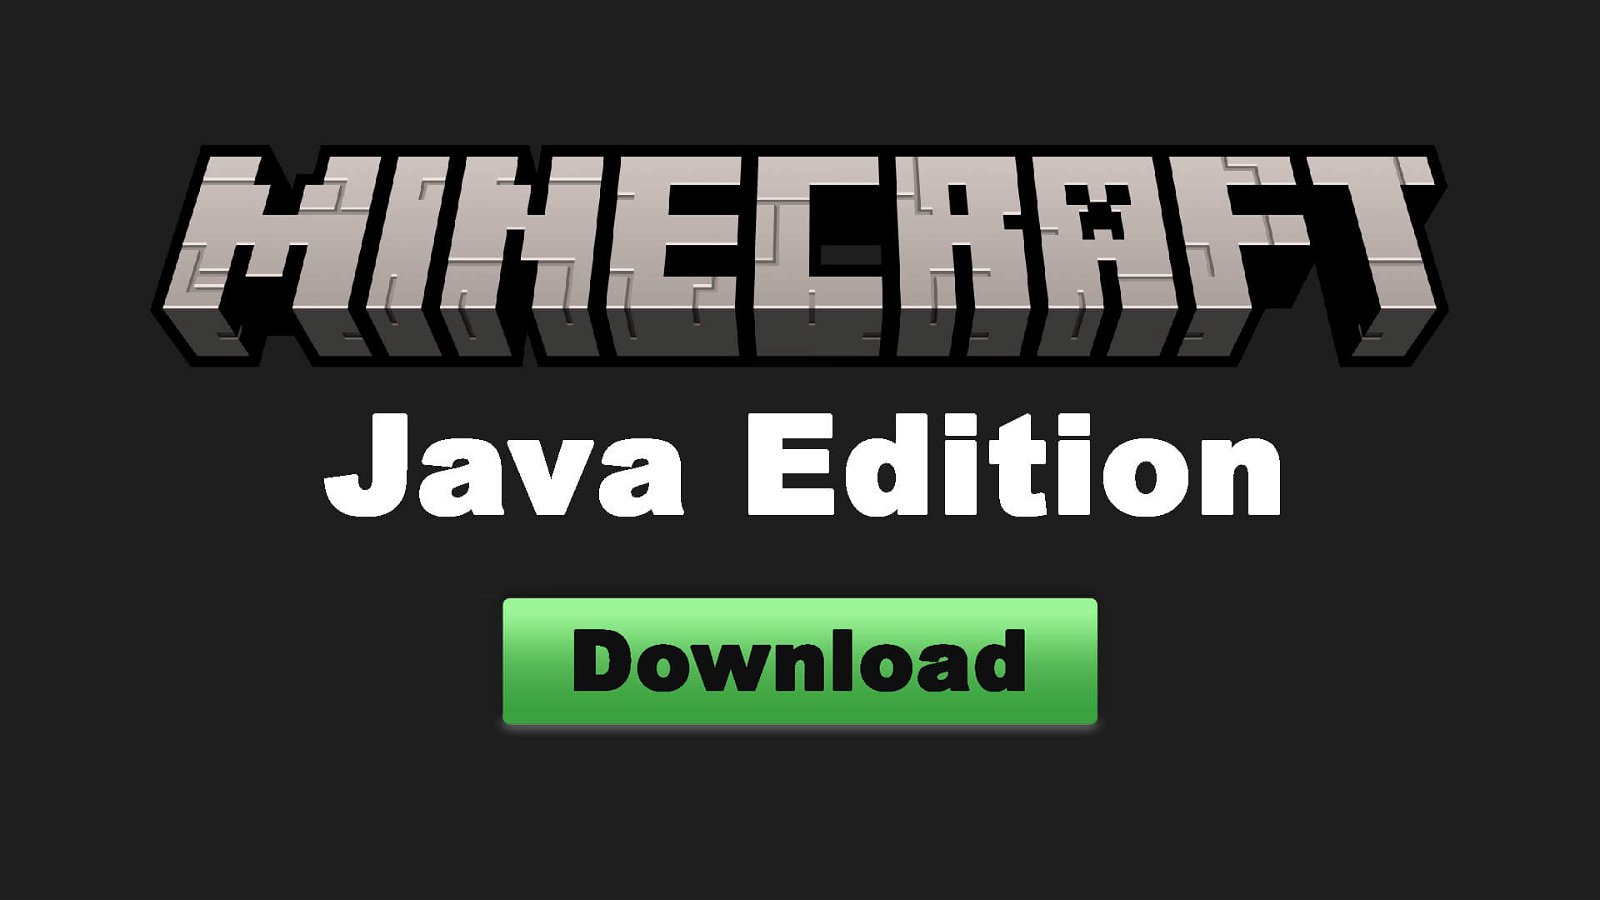 minecraft java edition apk download mediafıre